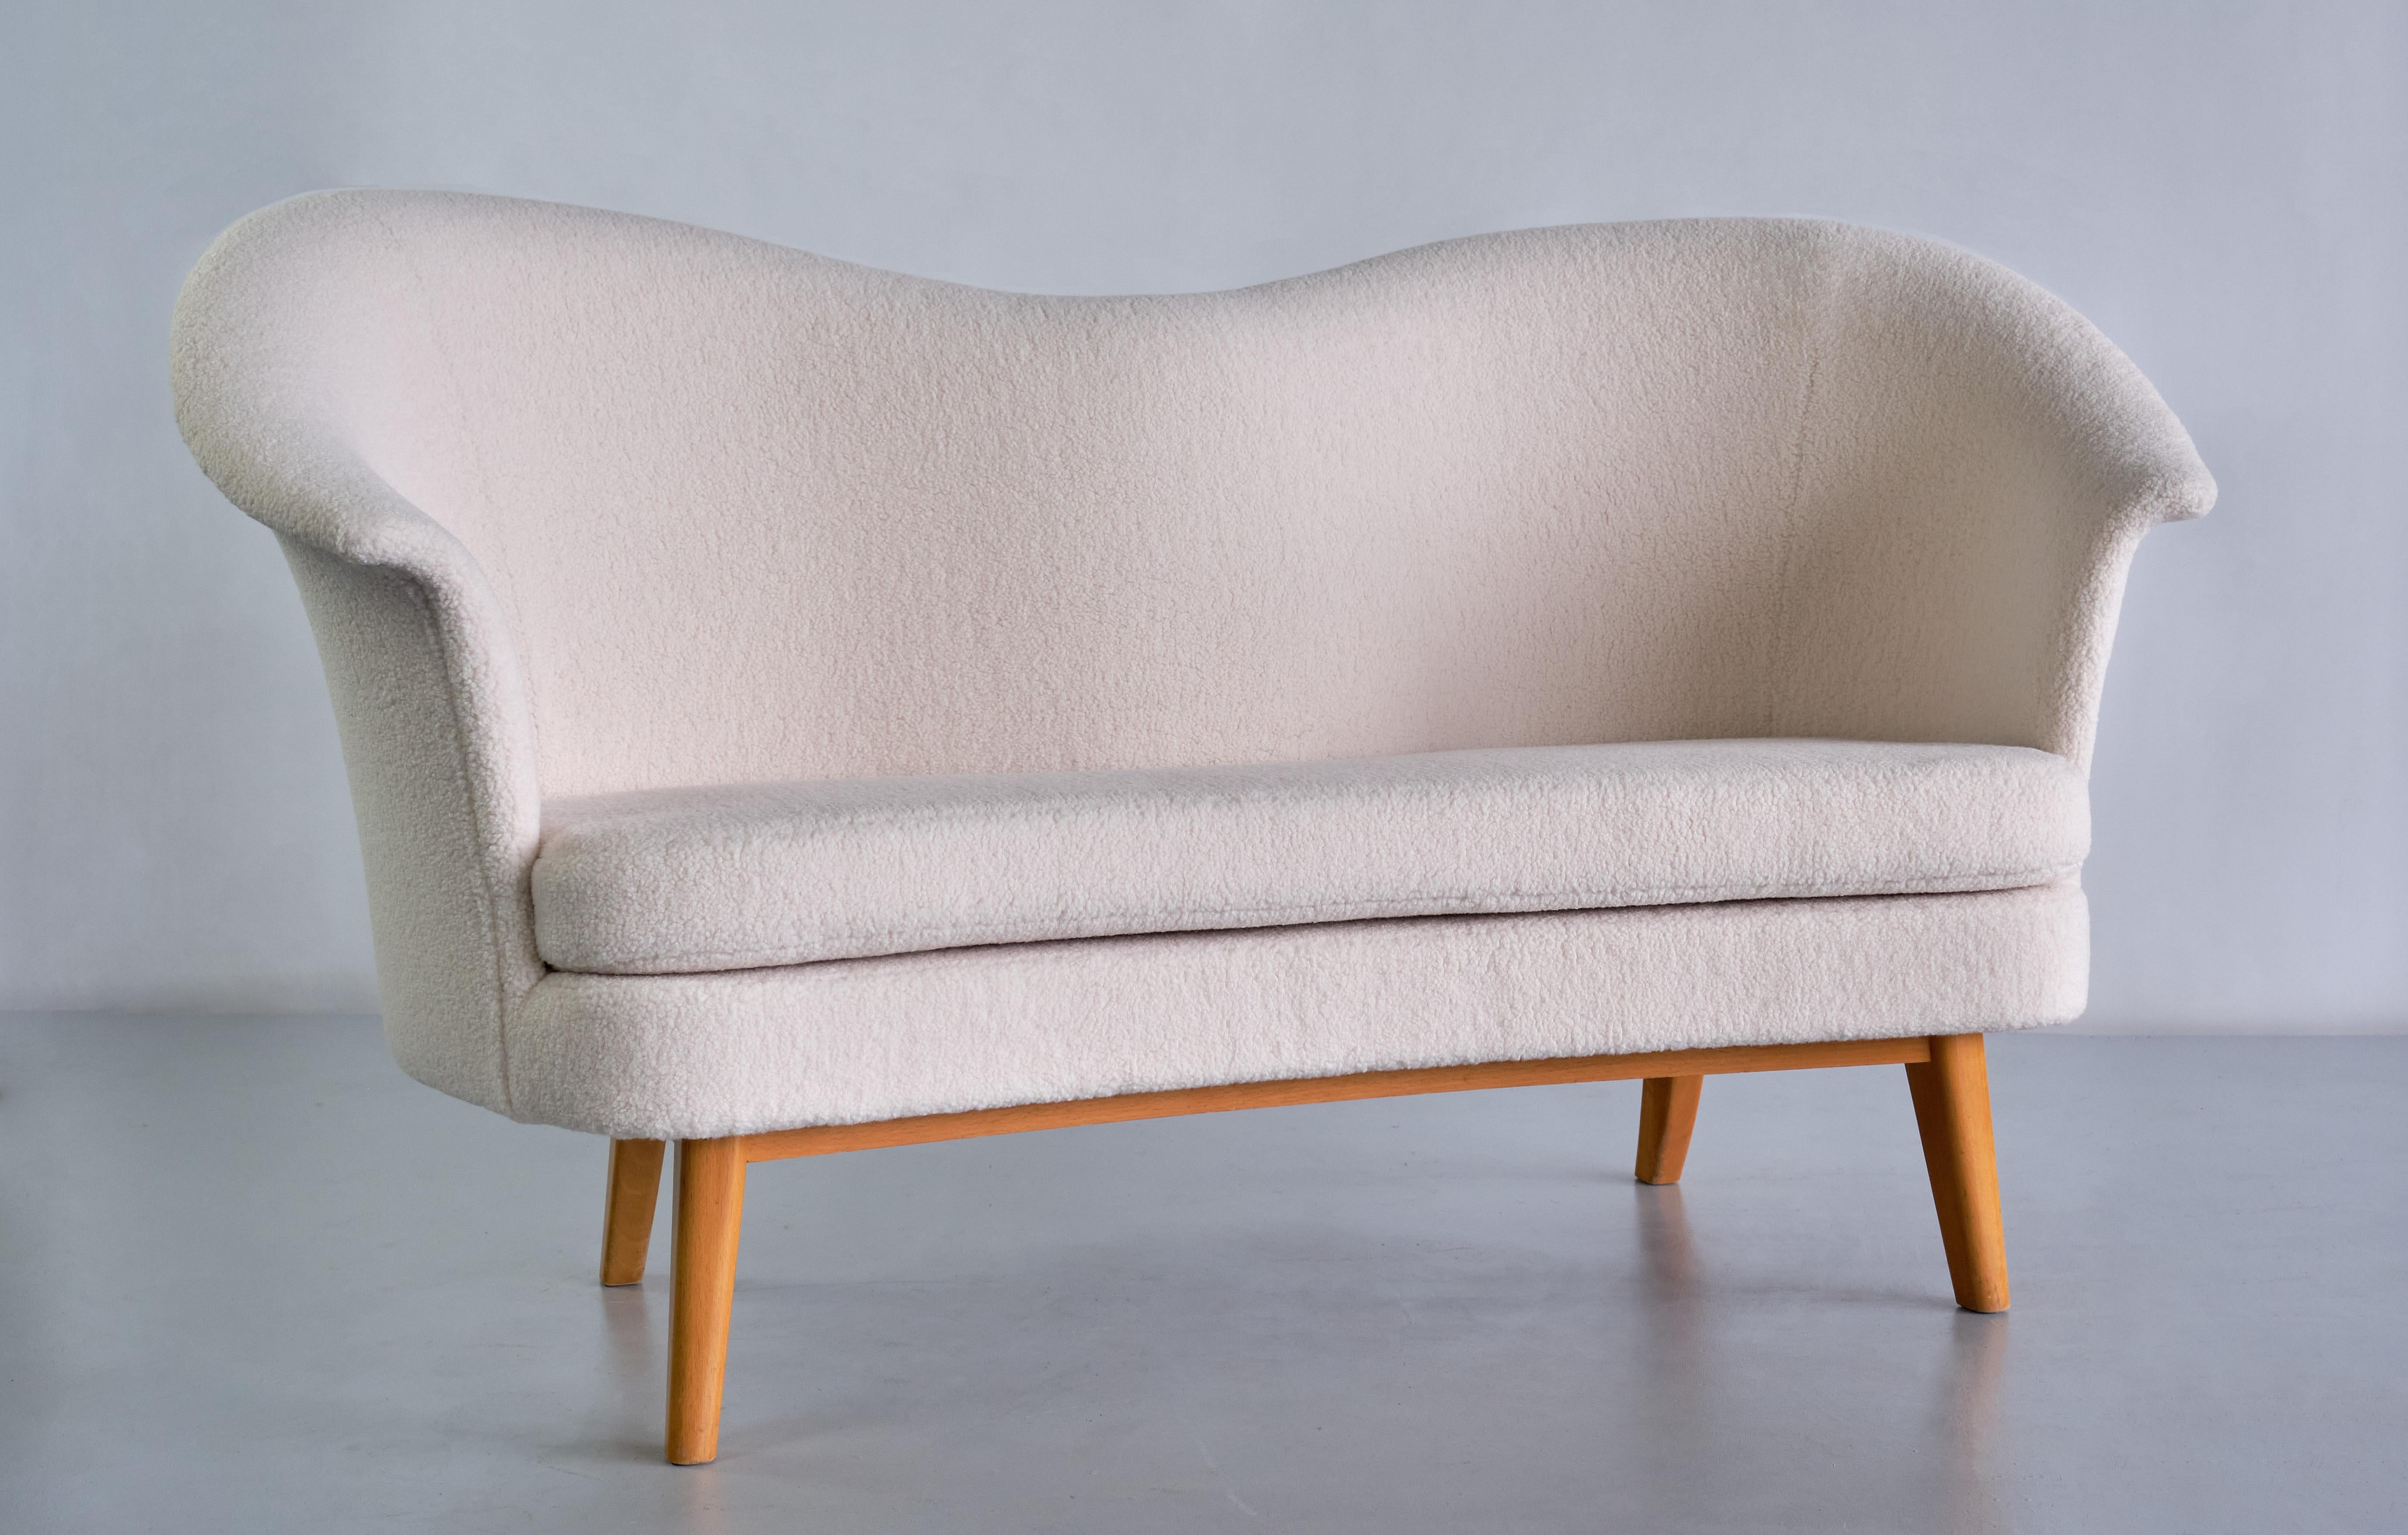 Ce canapé rare a été conçu par Olof Ottelin et produit par Keravan Puusepäntehdas pour la société Stockmann en Finlande dans les années 1950. Ce modèle biplace distinctif a été baptisé 